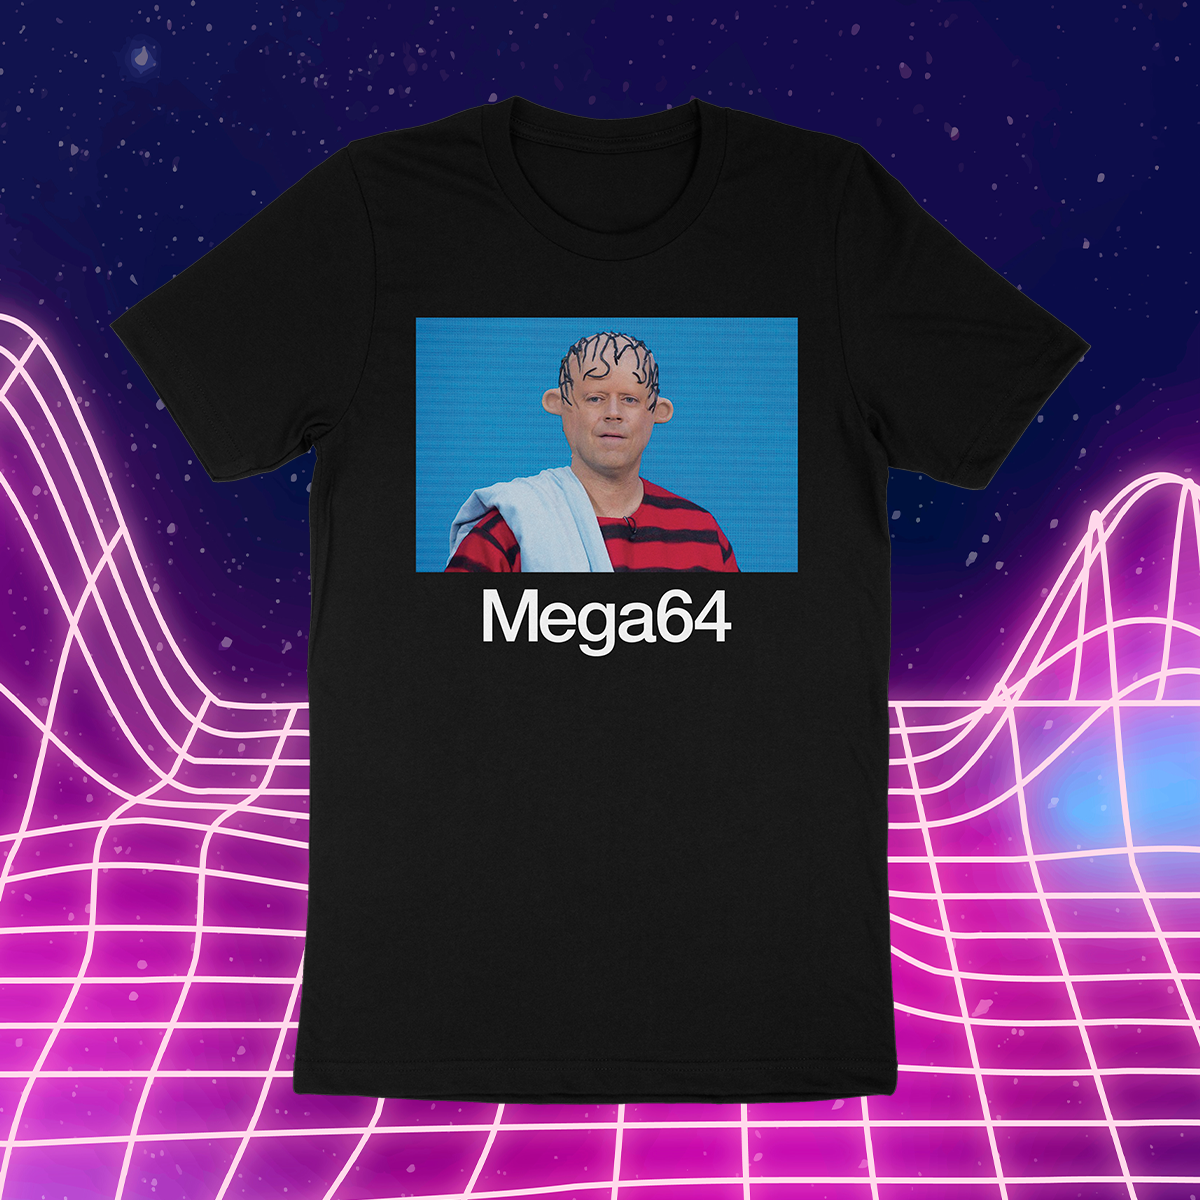 The Mega64 Shirt (PREORDER)